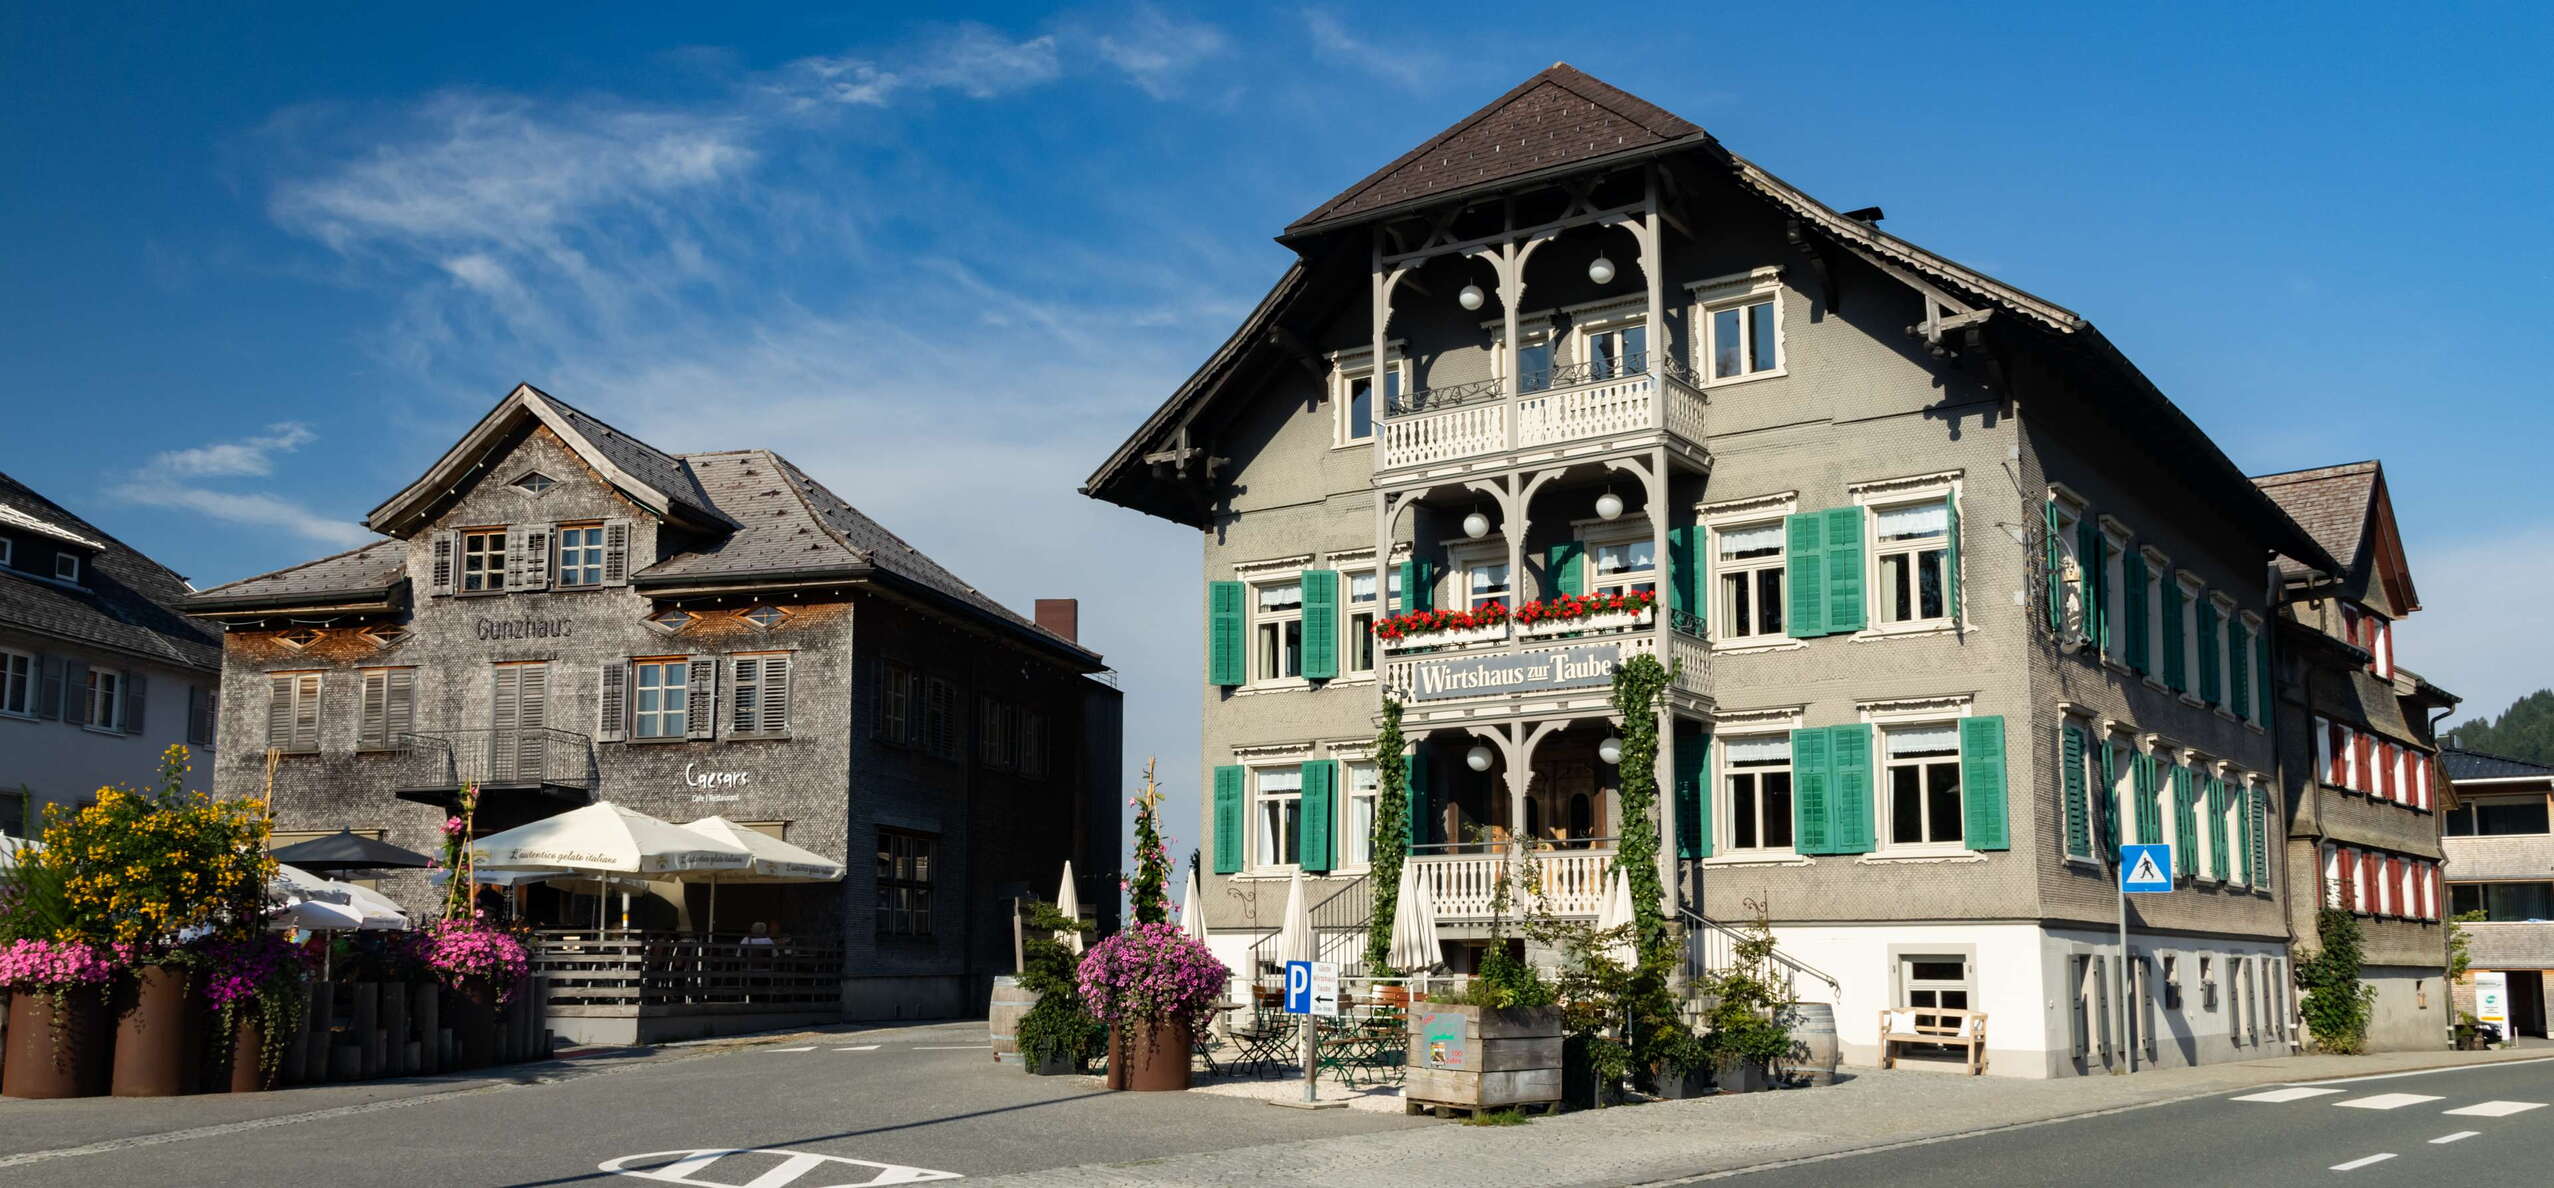 Alberschwende | Traditional buildings